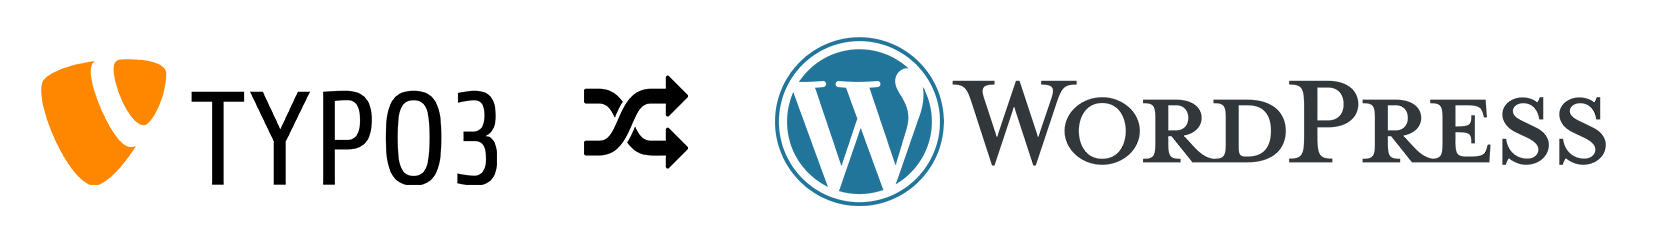 typo3 zu wordpress logo grafik